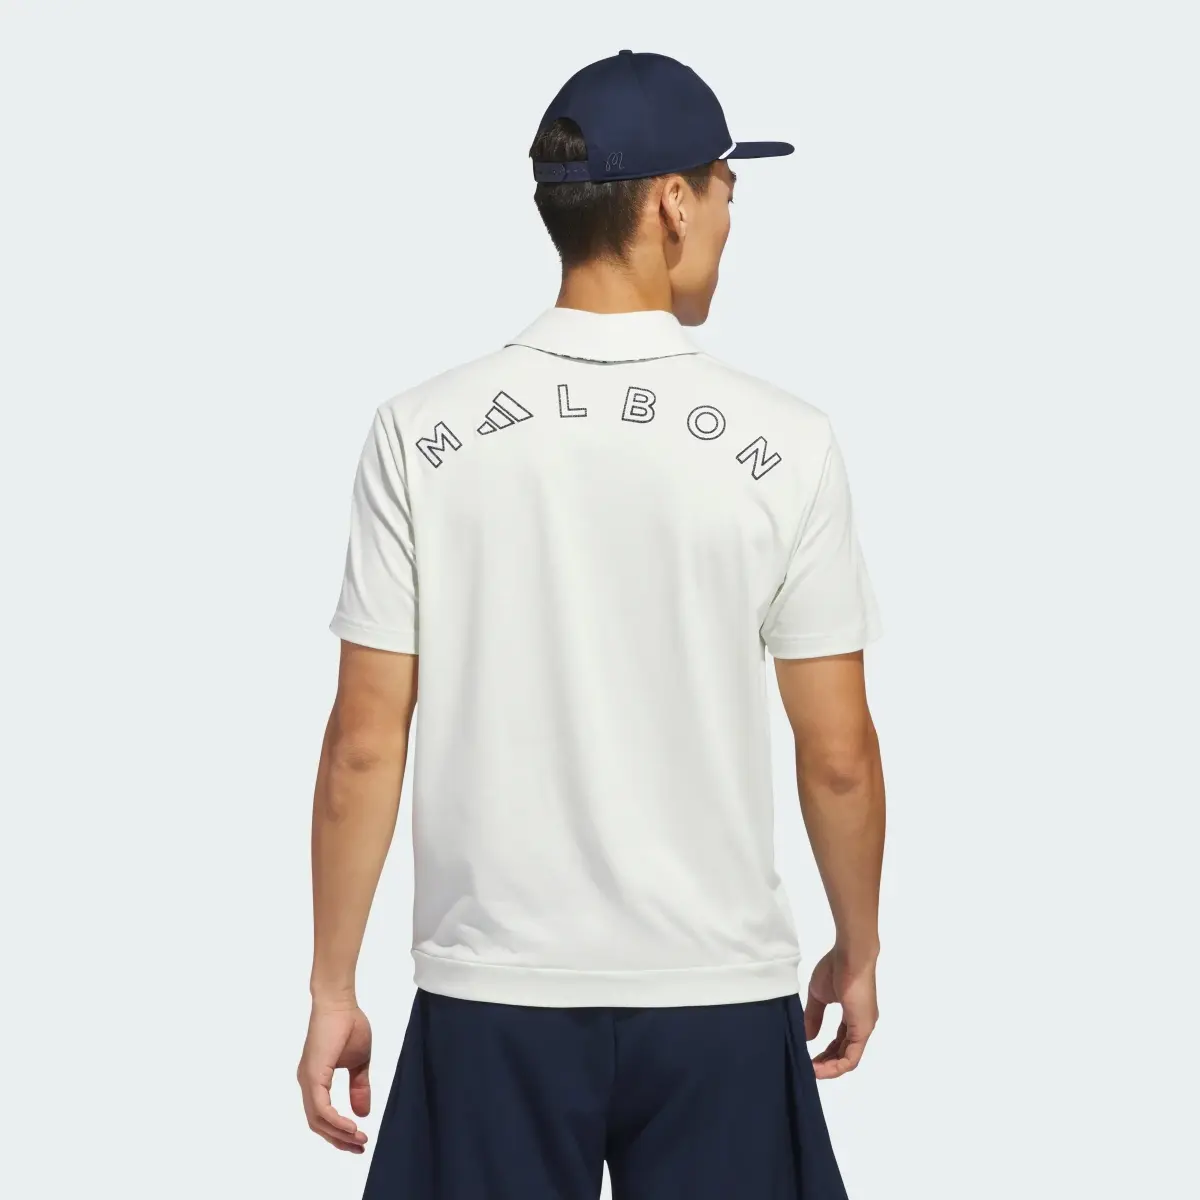 Adidas x Malbon Button Polo Shirt. 3